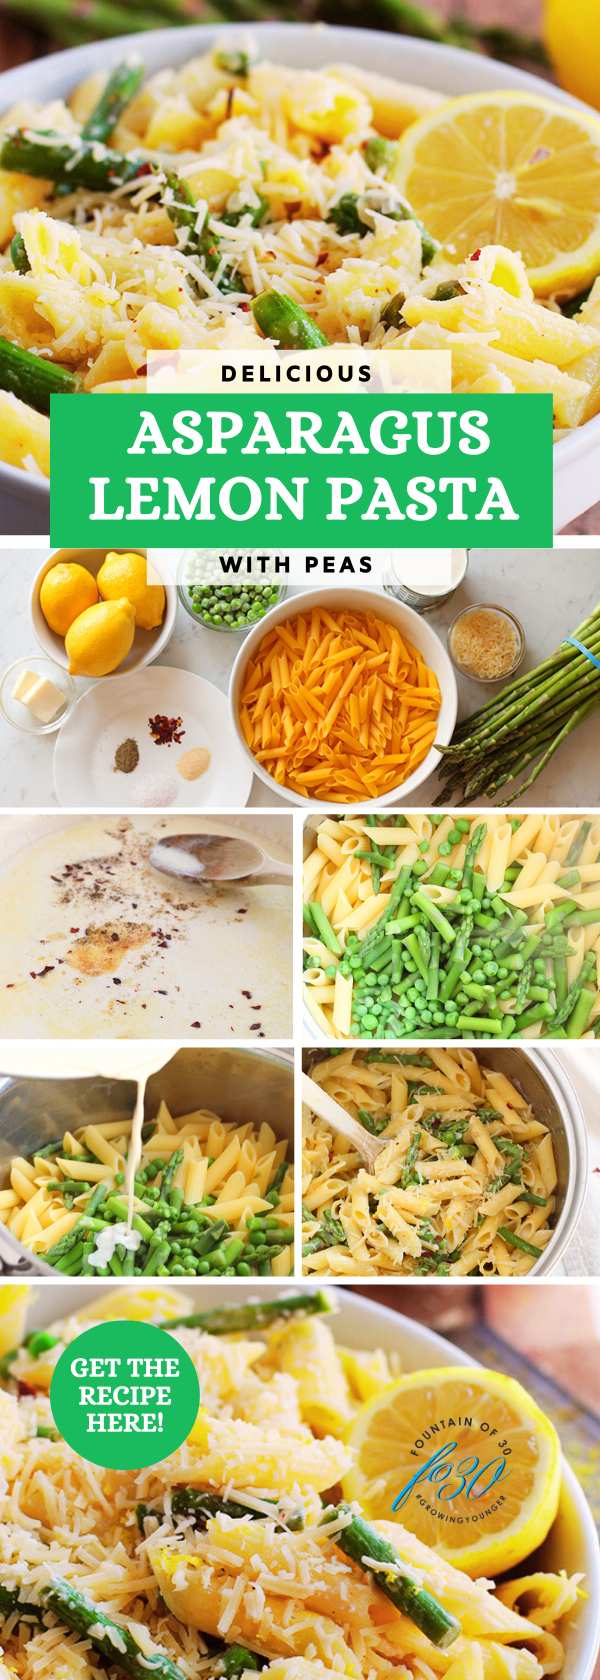 asparagus lemon vegetable pasta recipe fountainof30